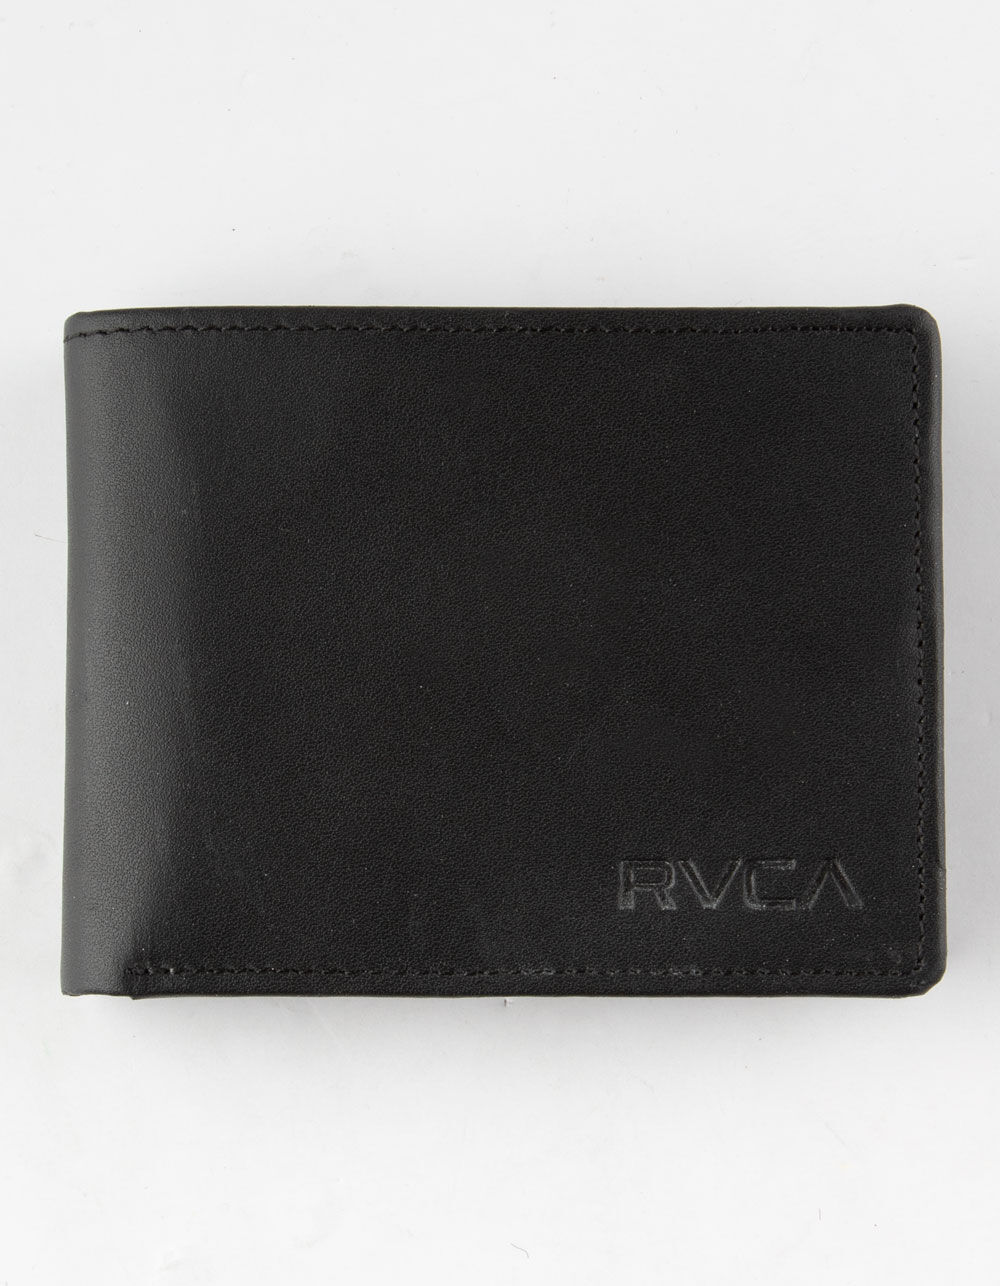 RVCA Crest Black Wallet - BLACK - MAWAQRCB-BLK